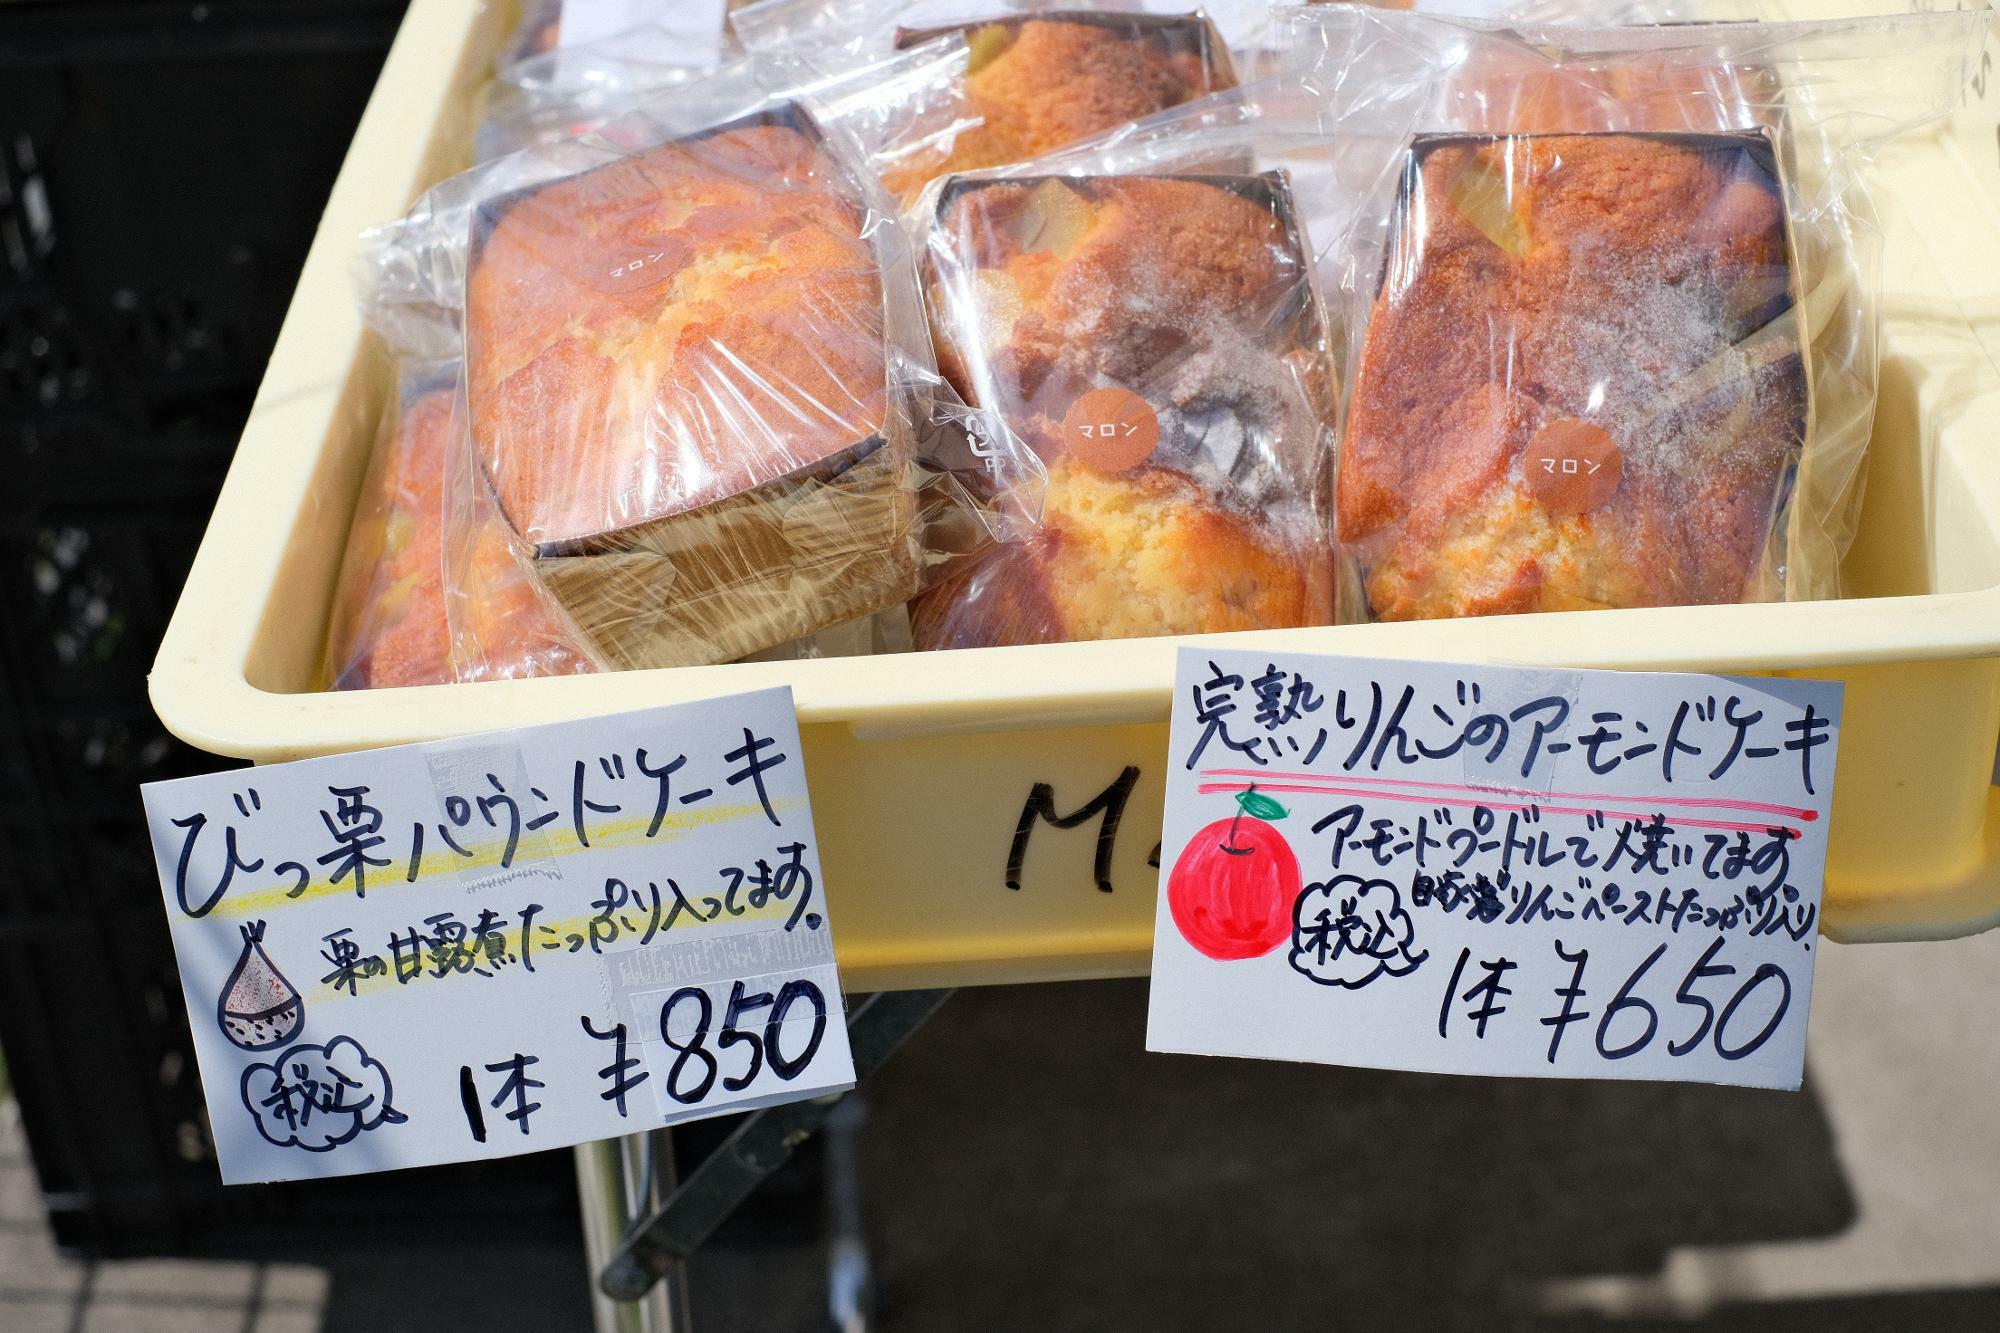 「びっ栗パウンドケーキ」1本 850円(税込)、「完熟りんごのアーモンドケーキ」1本 650円(税込)